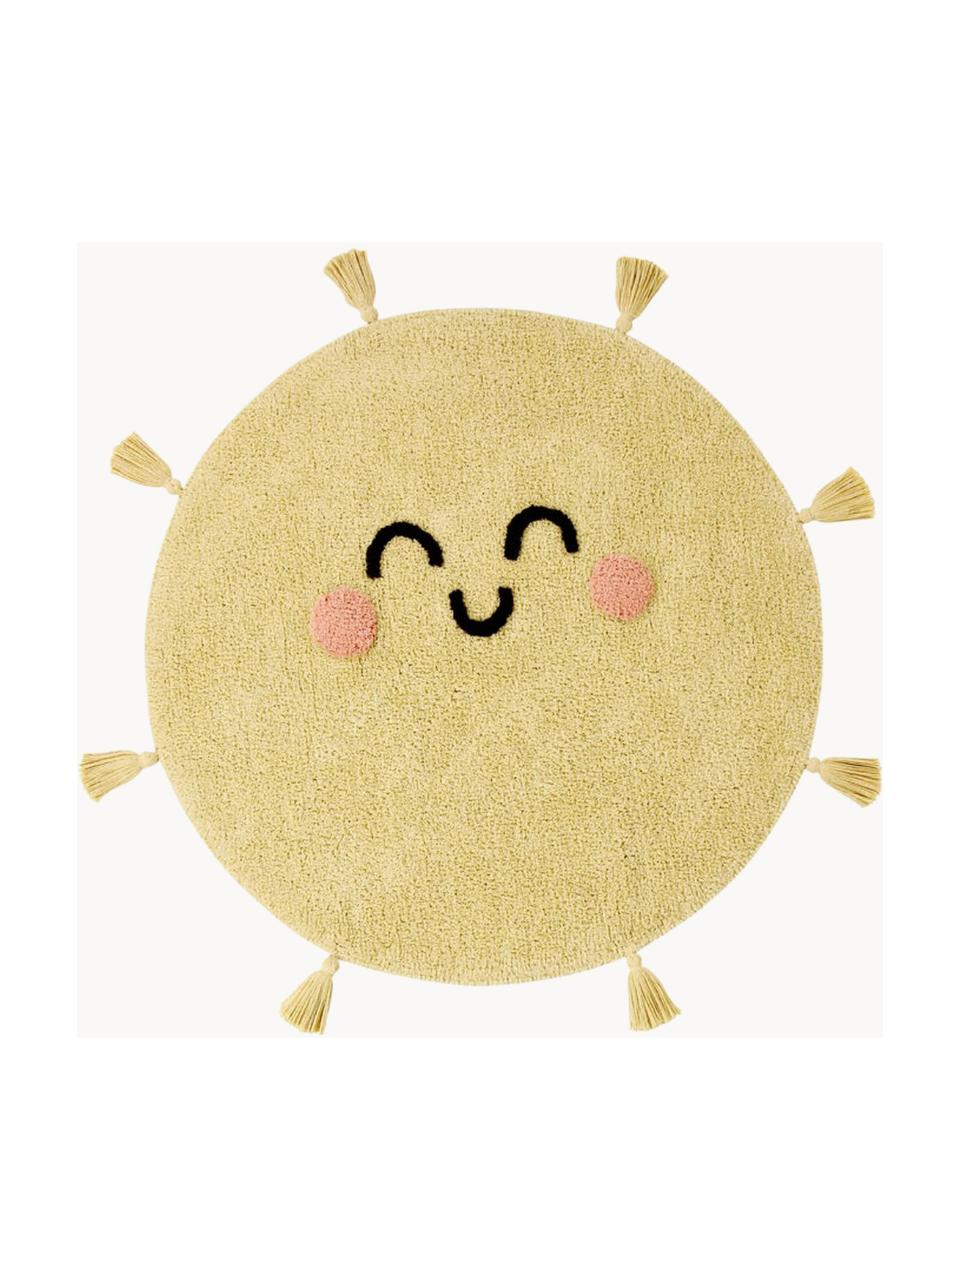 Handgewebter Kinderteppich You're My Sunshine mit Quasten, waschbar, Flor: 97 % Baumwolle, 3 % Kunst, Senfgelb, Ø 100 cm (Grösse S)